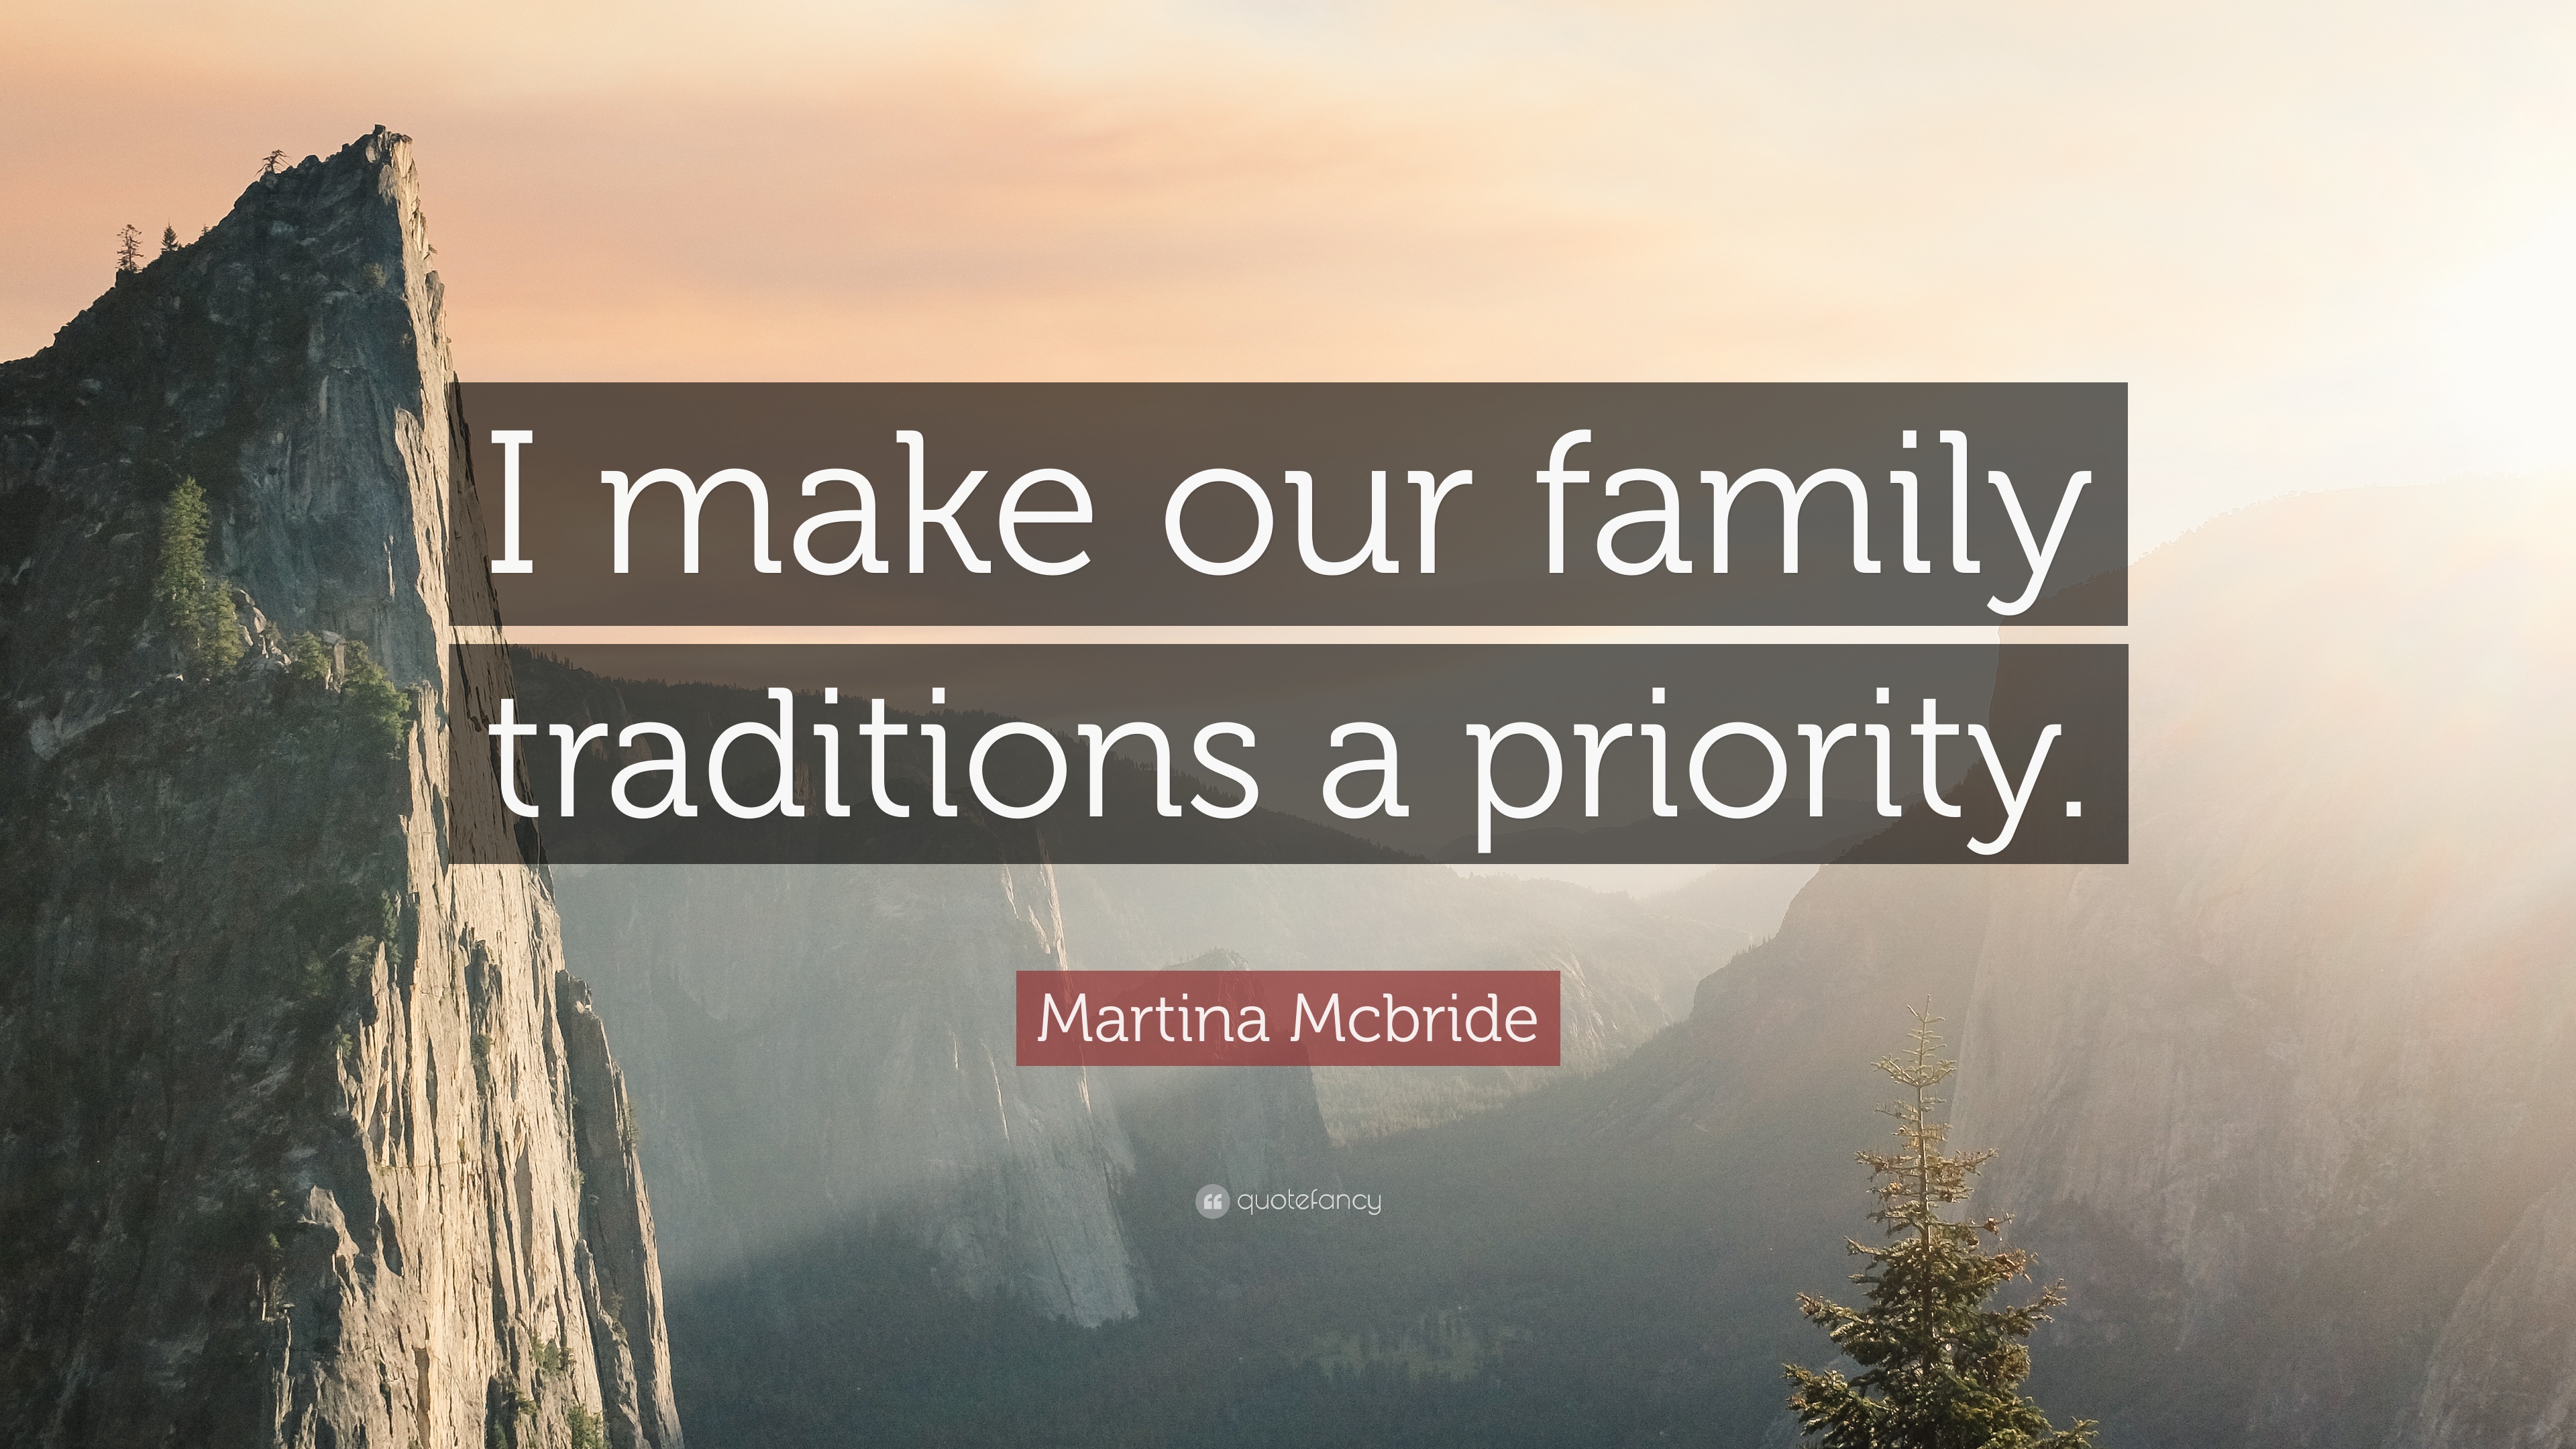 Martina Mcbride Quote: “I make our family traditions a